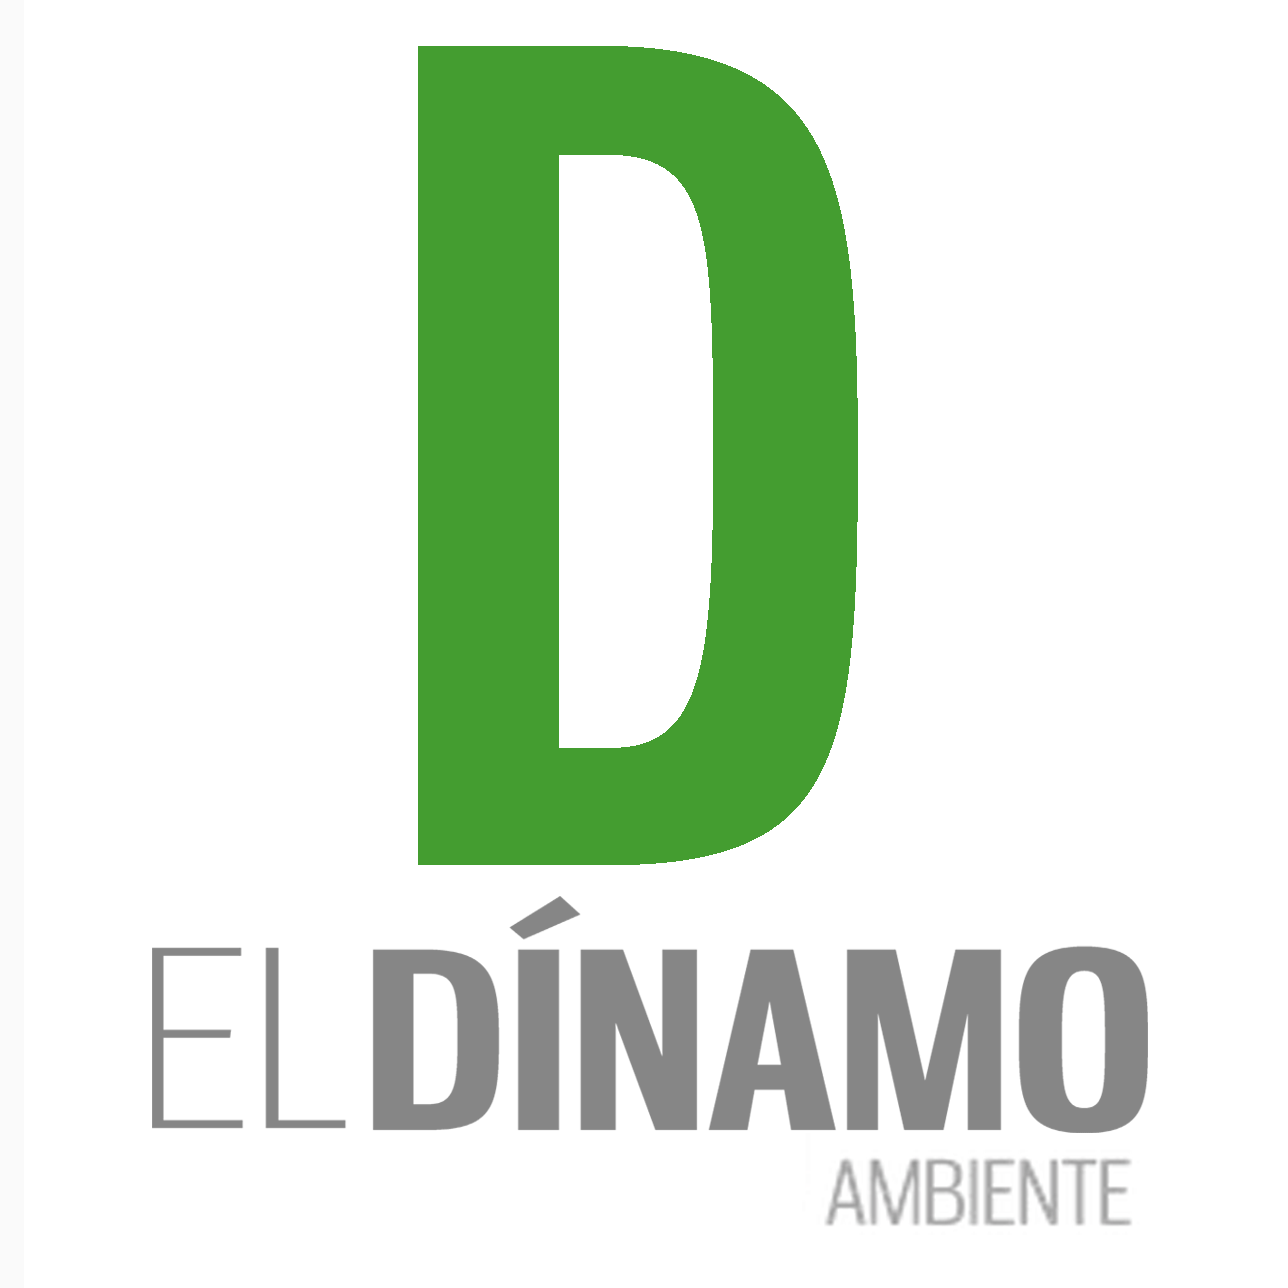 ¿Interesado del acontecer medioambiental? Entonces @Dinamo_Ambiente es tu lugar. Síguenos y sé parte de nuestra comunidad verde.